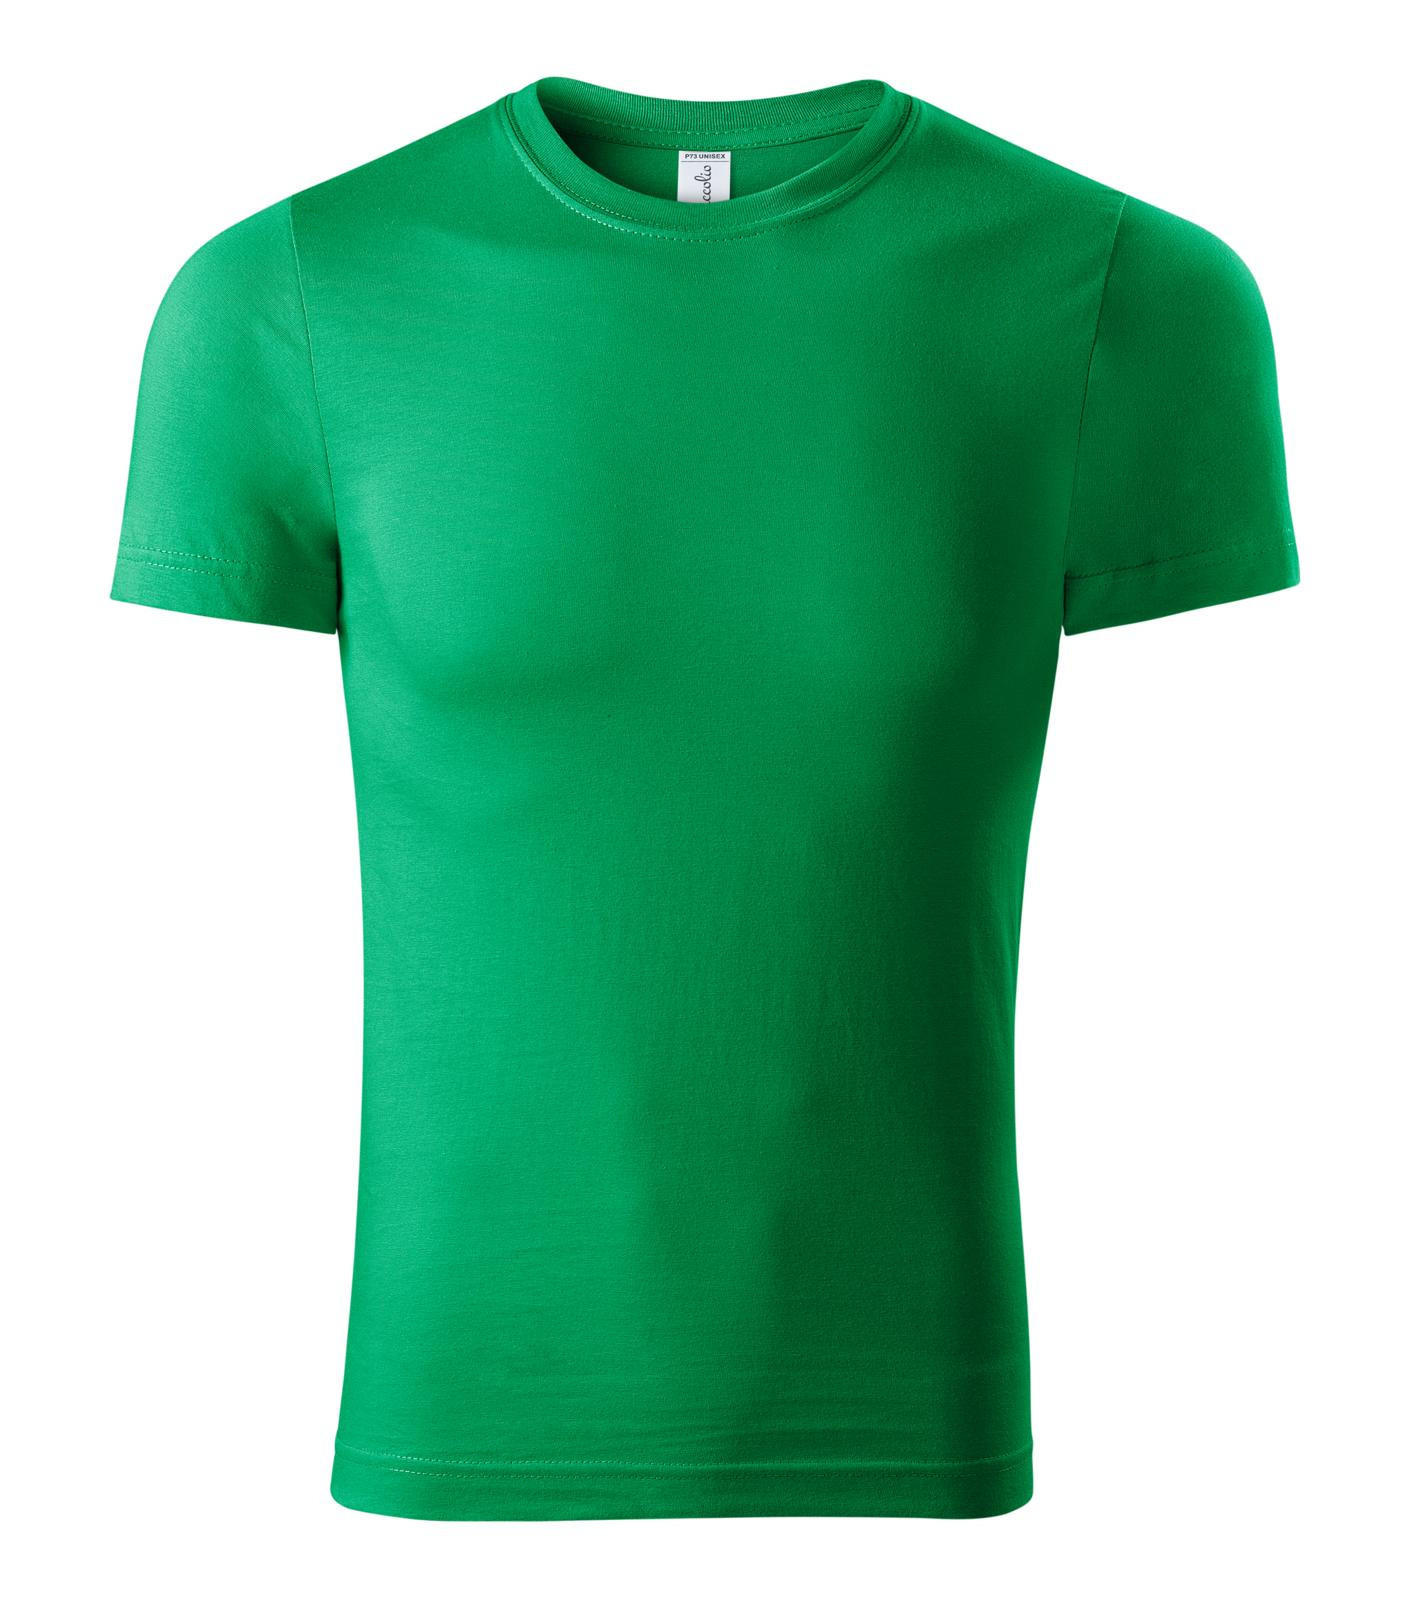 Unisex tričko Piccolio Paint P73 - veľkosť: S, farba: trávová zelená